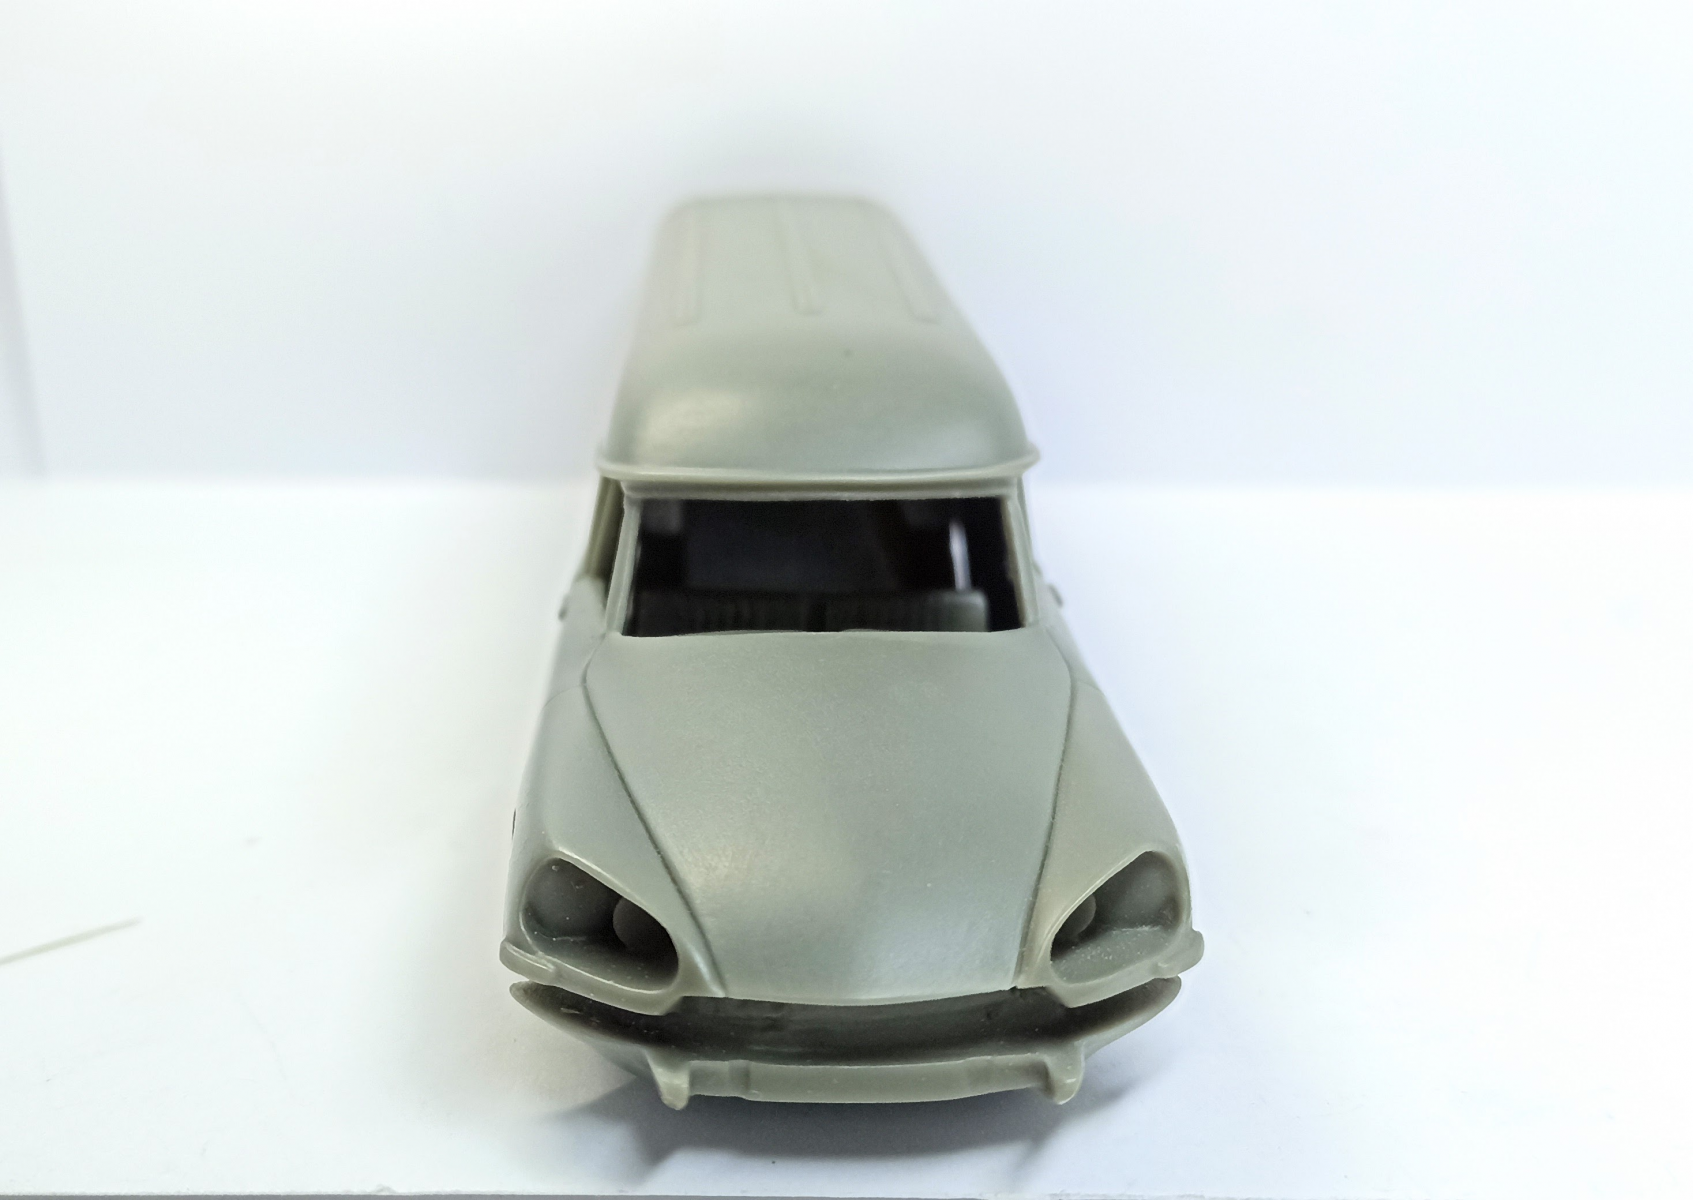 Maquette voiture : Kit : Citroën DS 19